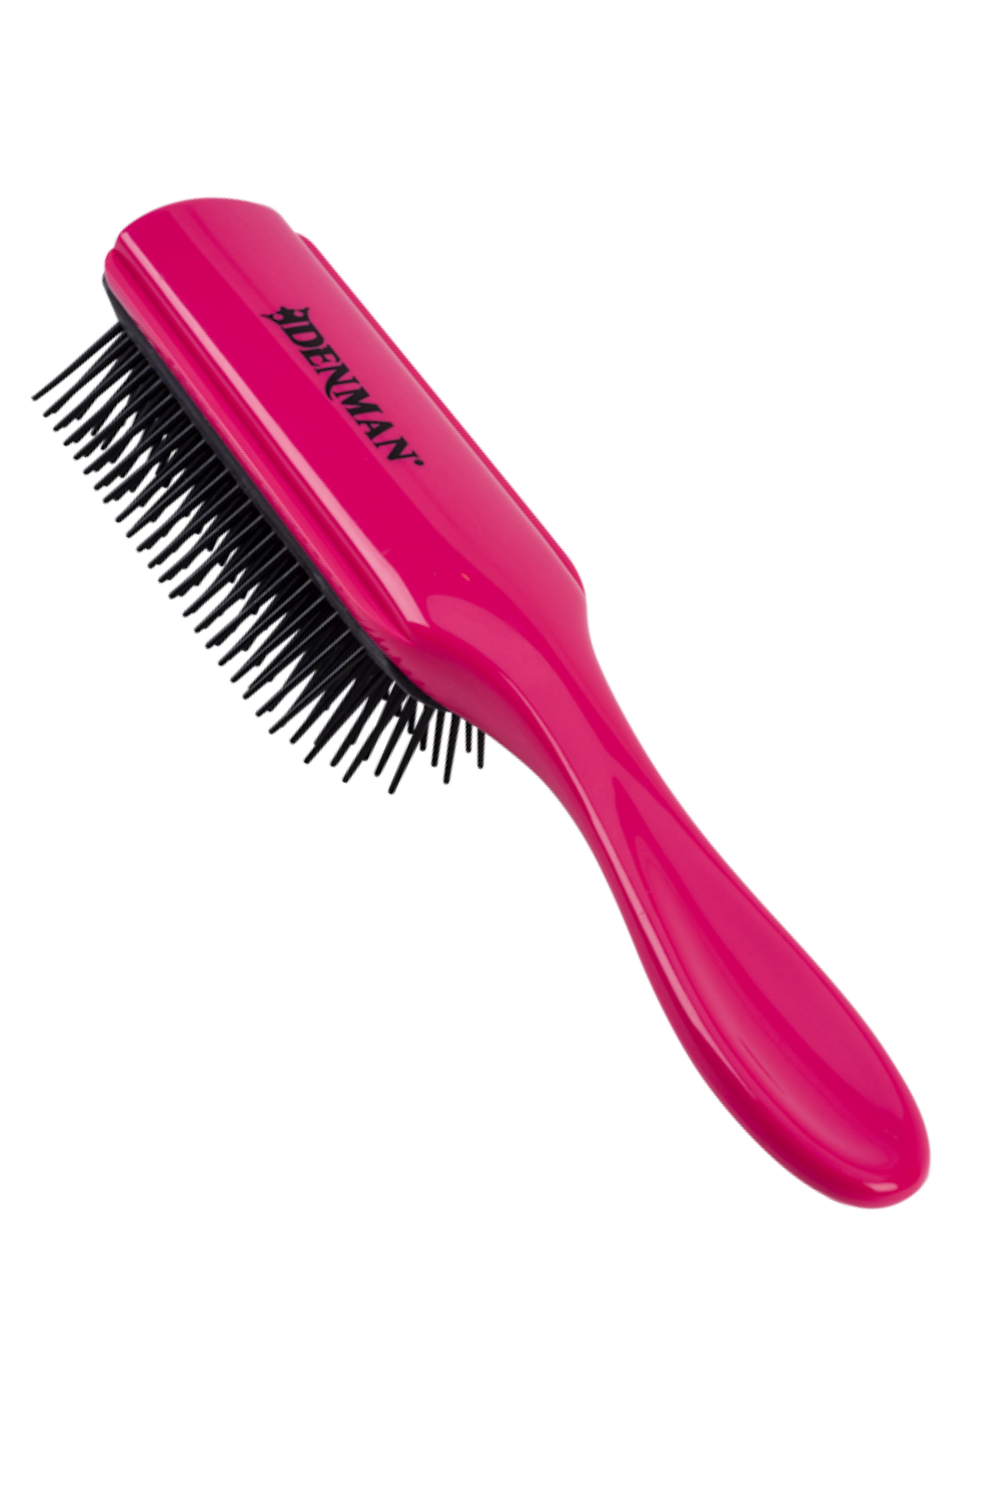 D4 Asian Orchid Pink | Denman | Denman Curl USA – Hairbrush | Styler Definition | Original